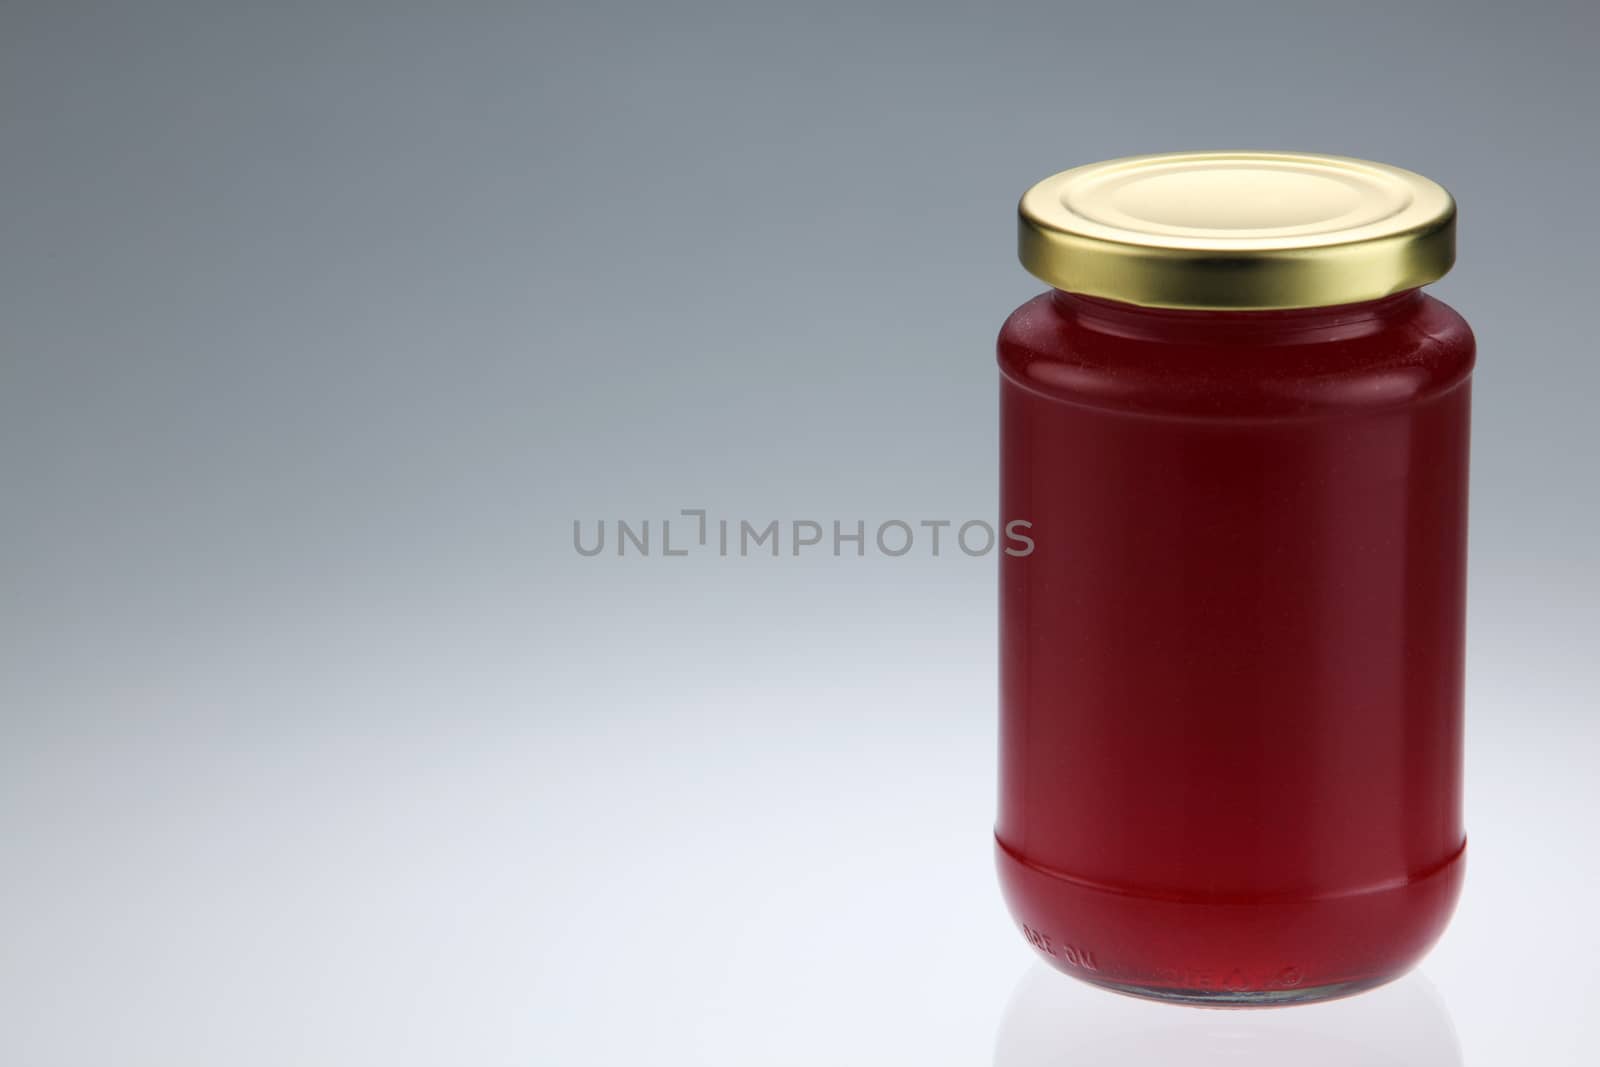 Strawberry jam jar isolated on white background